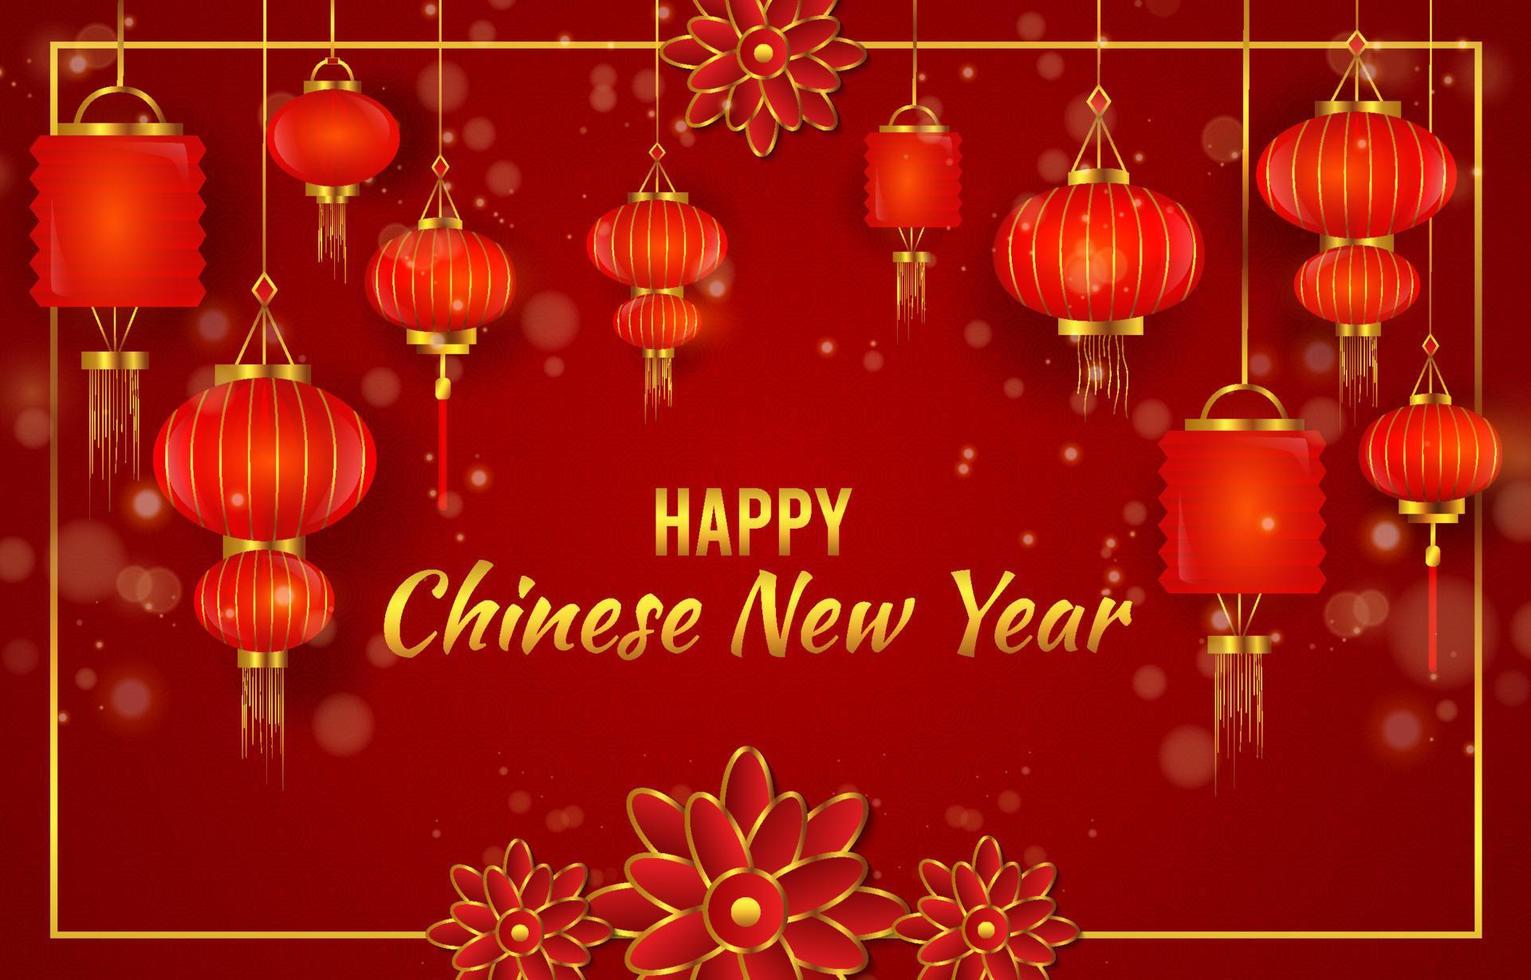 Chinesisches Neujahr Hintergrundlaterne mit Ornament vektor